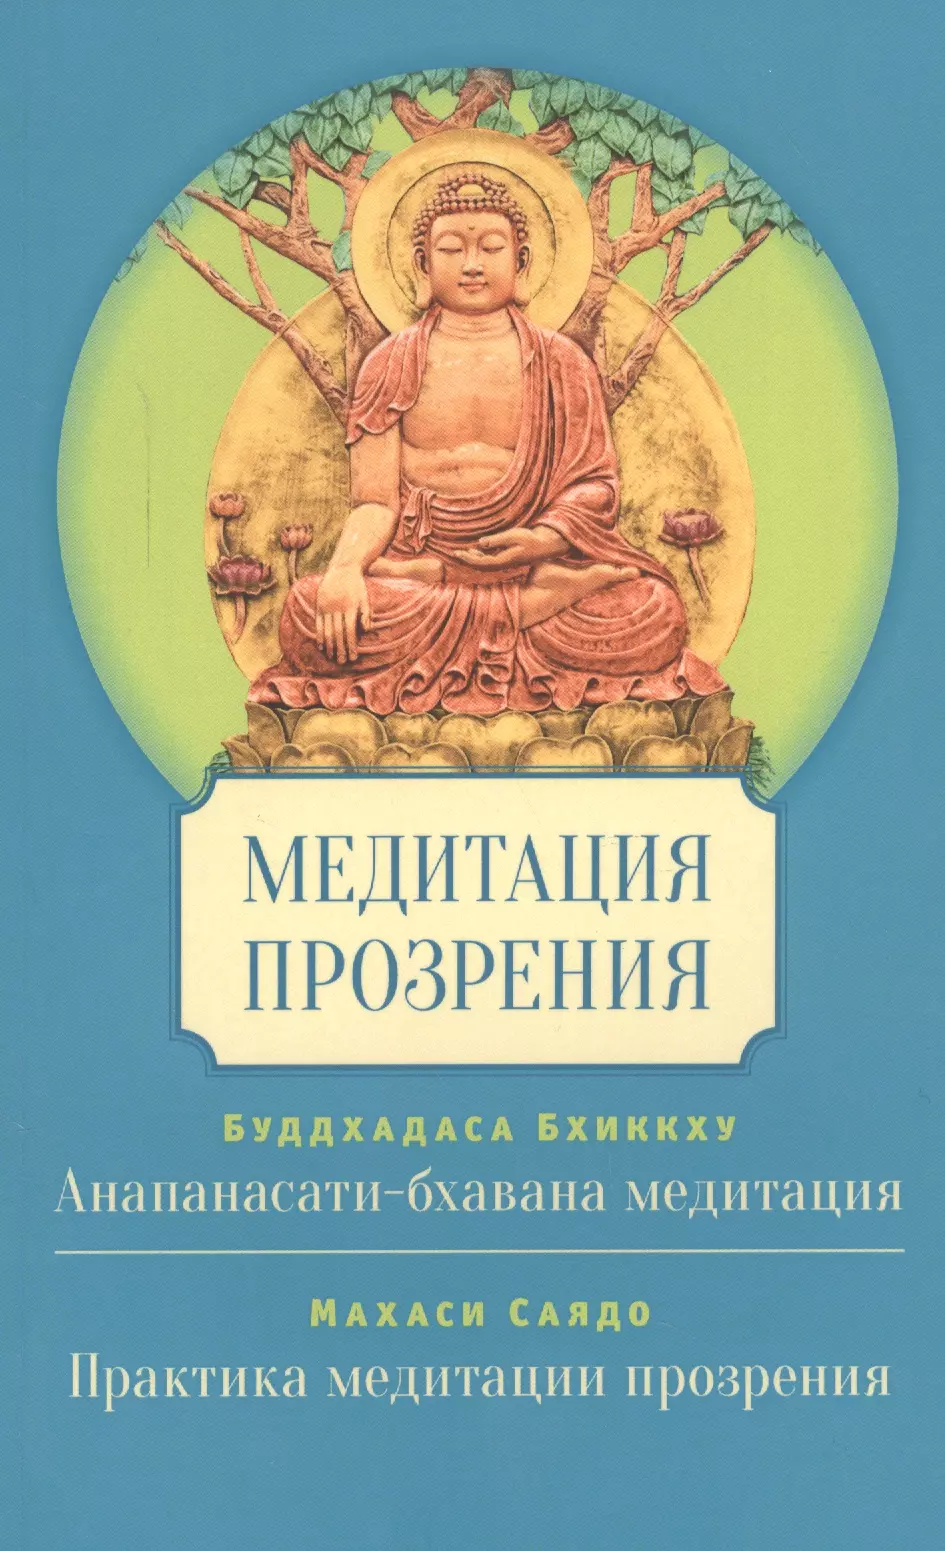 махаси саядо развитие прозрения современный трактат по буддийской медитации сатипаттхана Буддхадаса Бхиккху Медитация прозрения